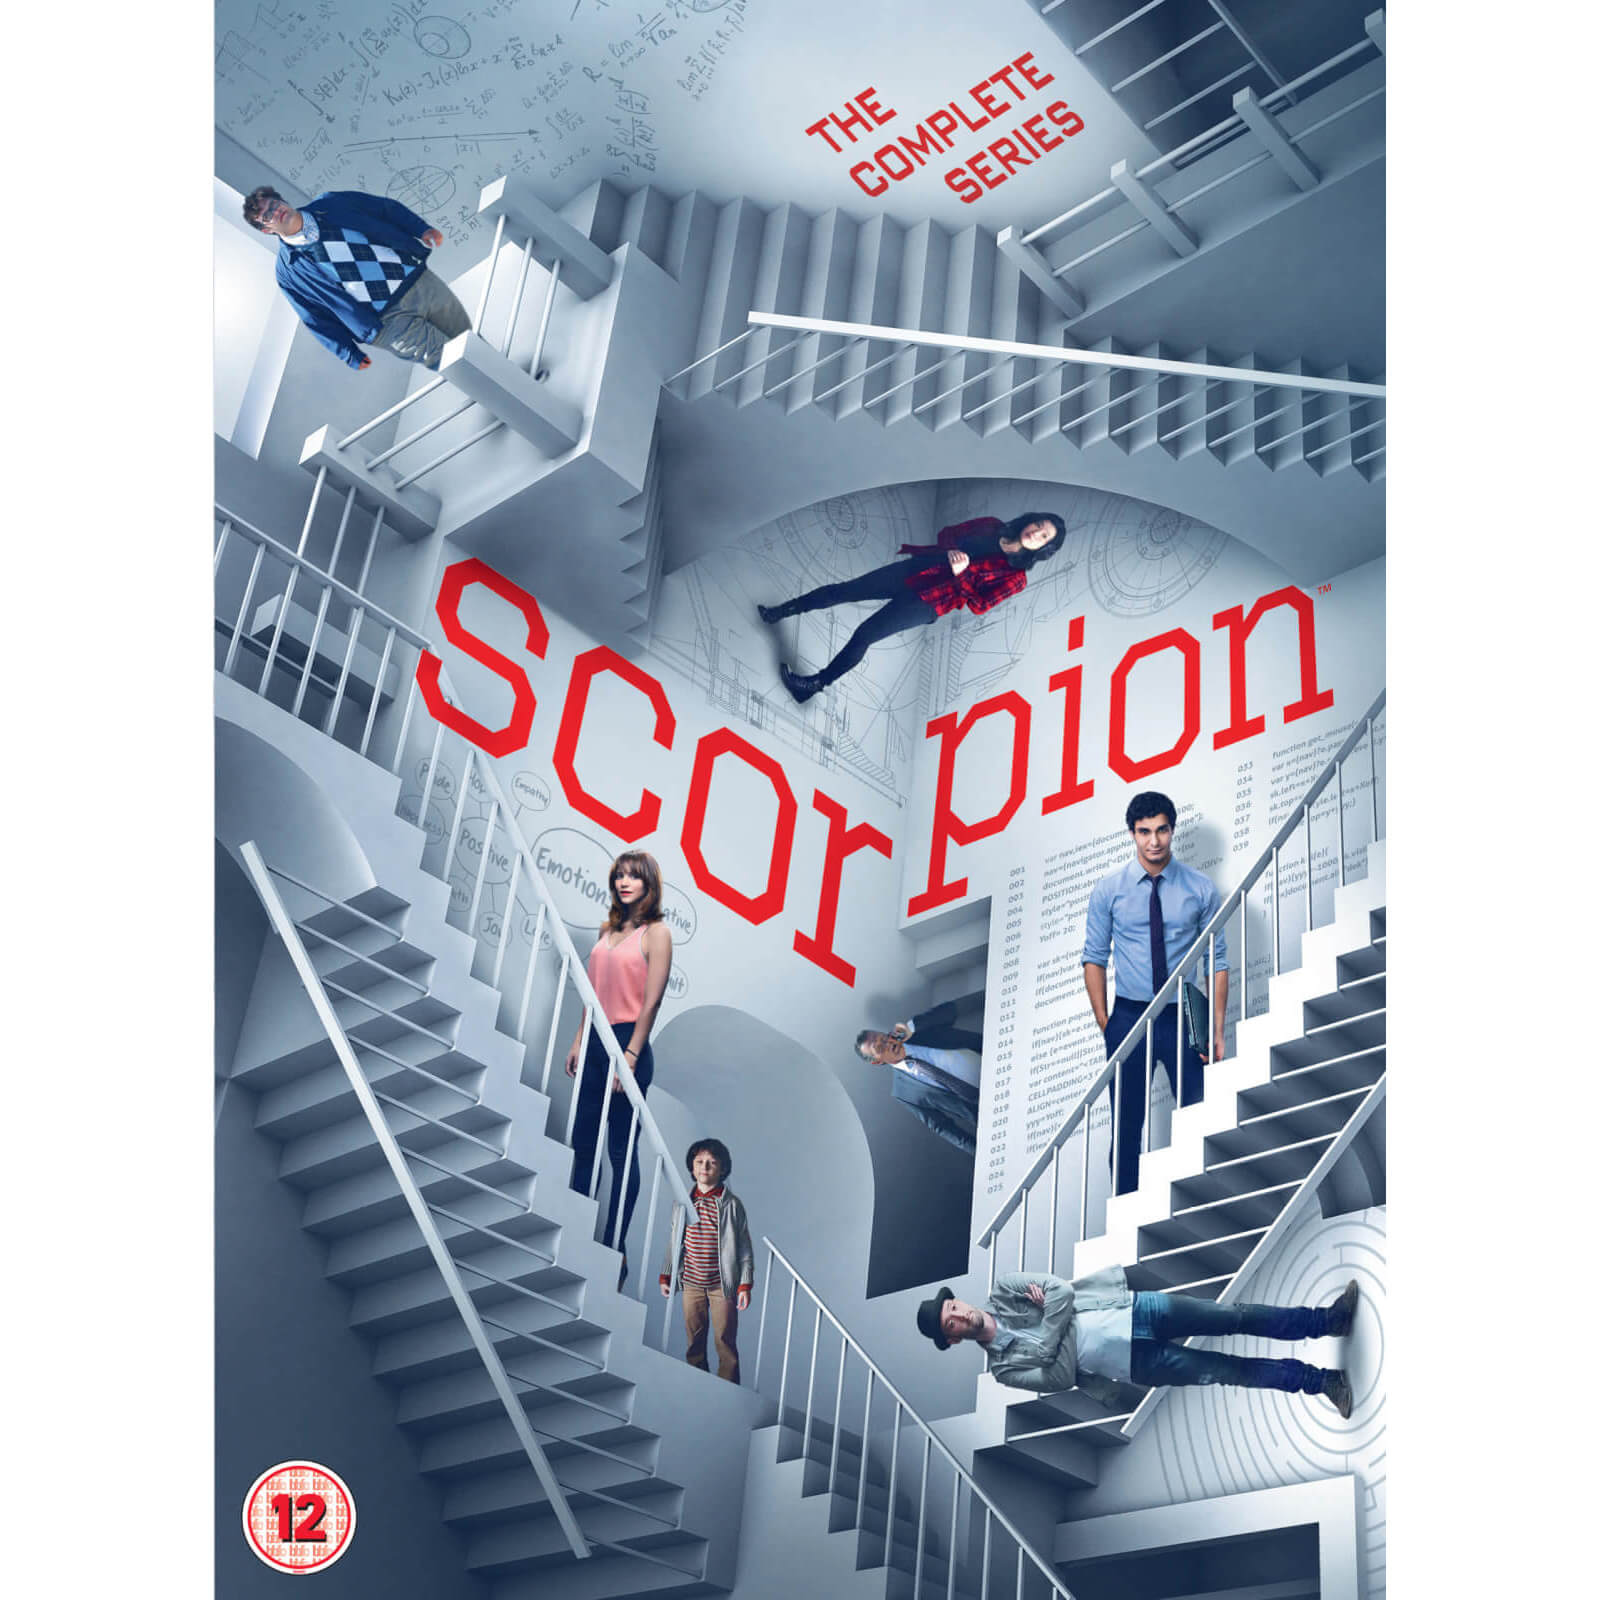 Skorpion: Komplett 1-4 Box-Set von Paramount Home Entertainment